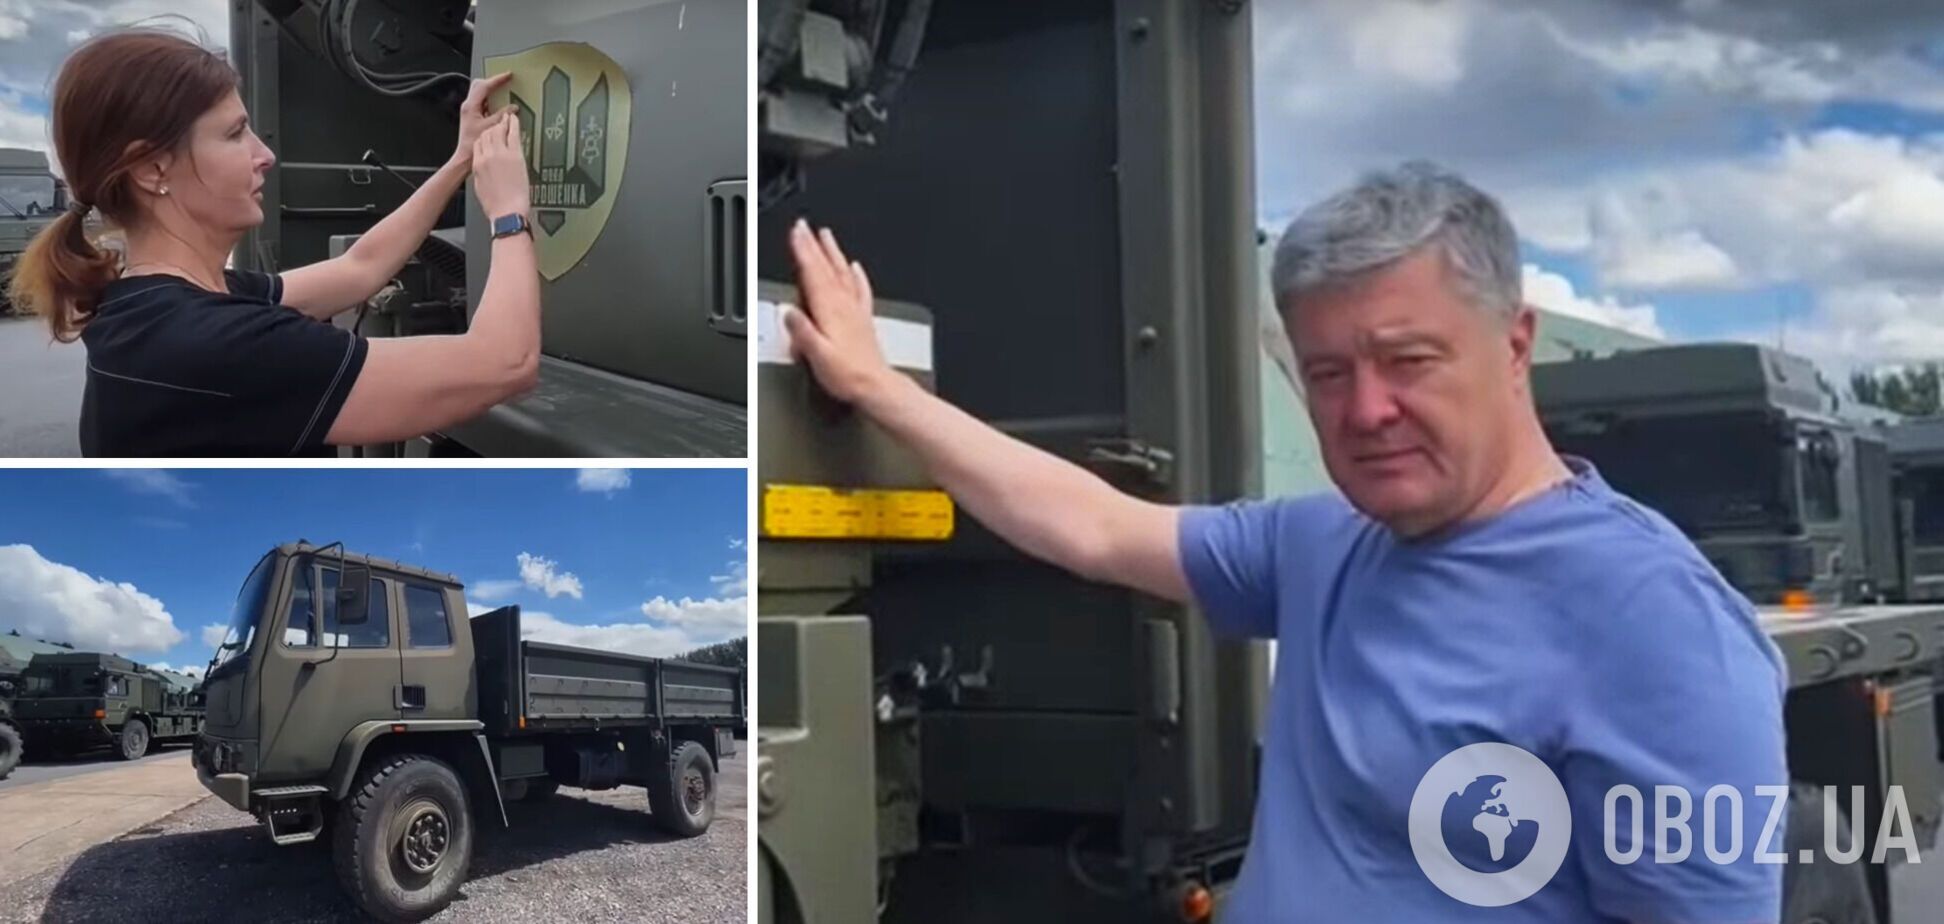 Первая партия грузовиков для ВСУ, приобретенных в Британии, отправилась в Украину, – Порошенко